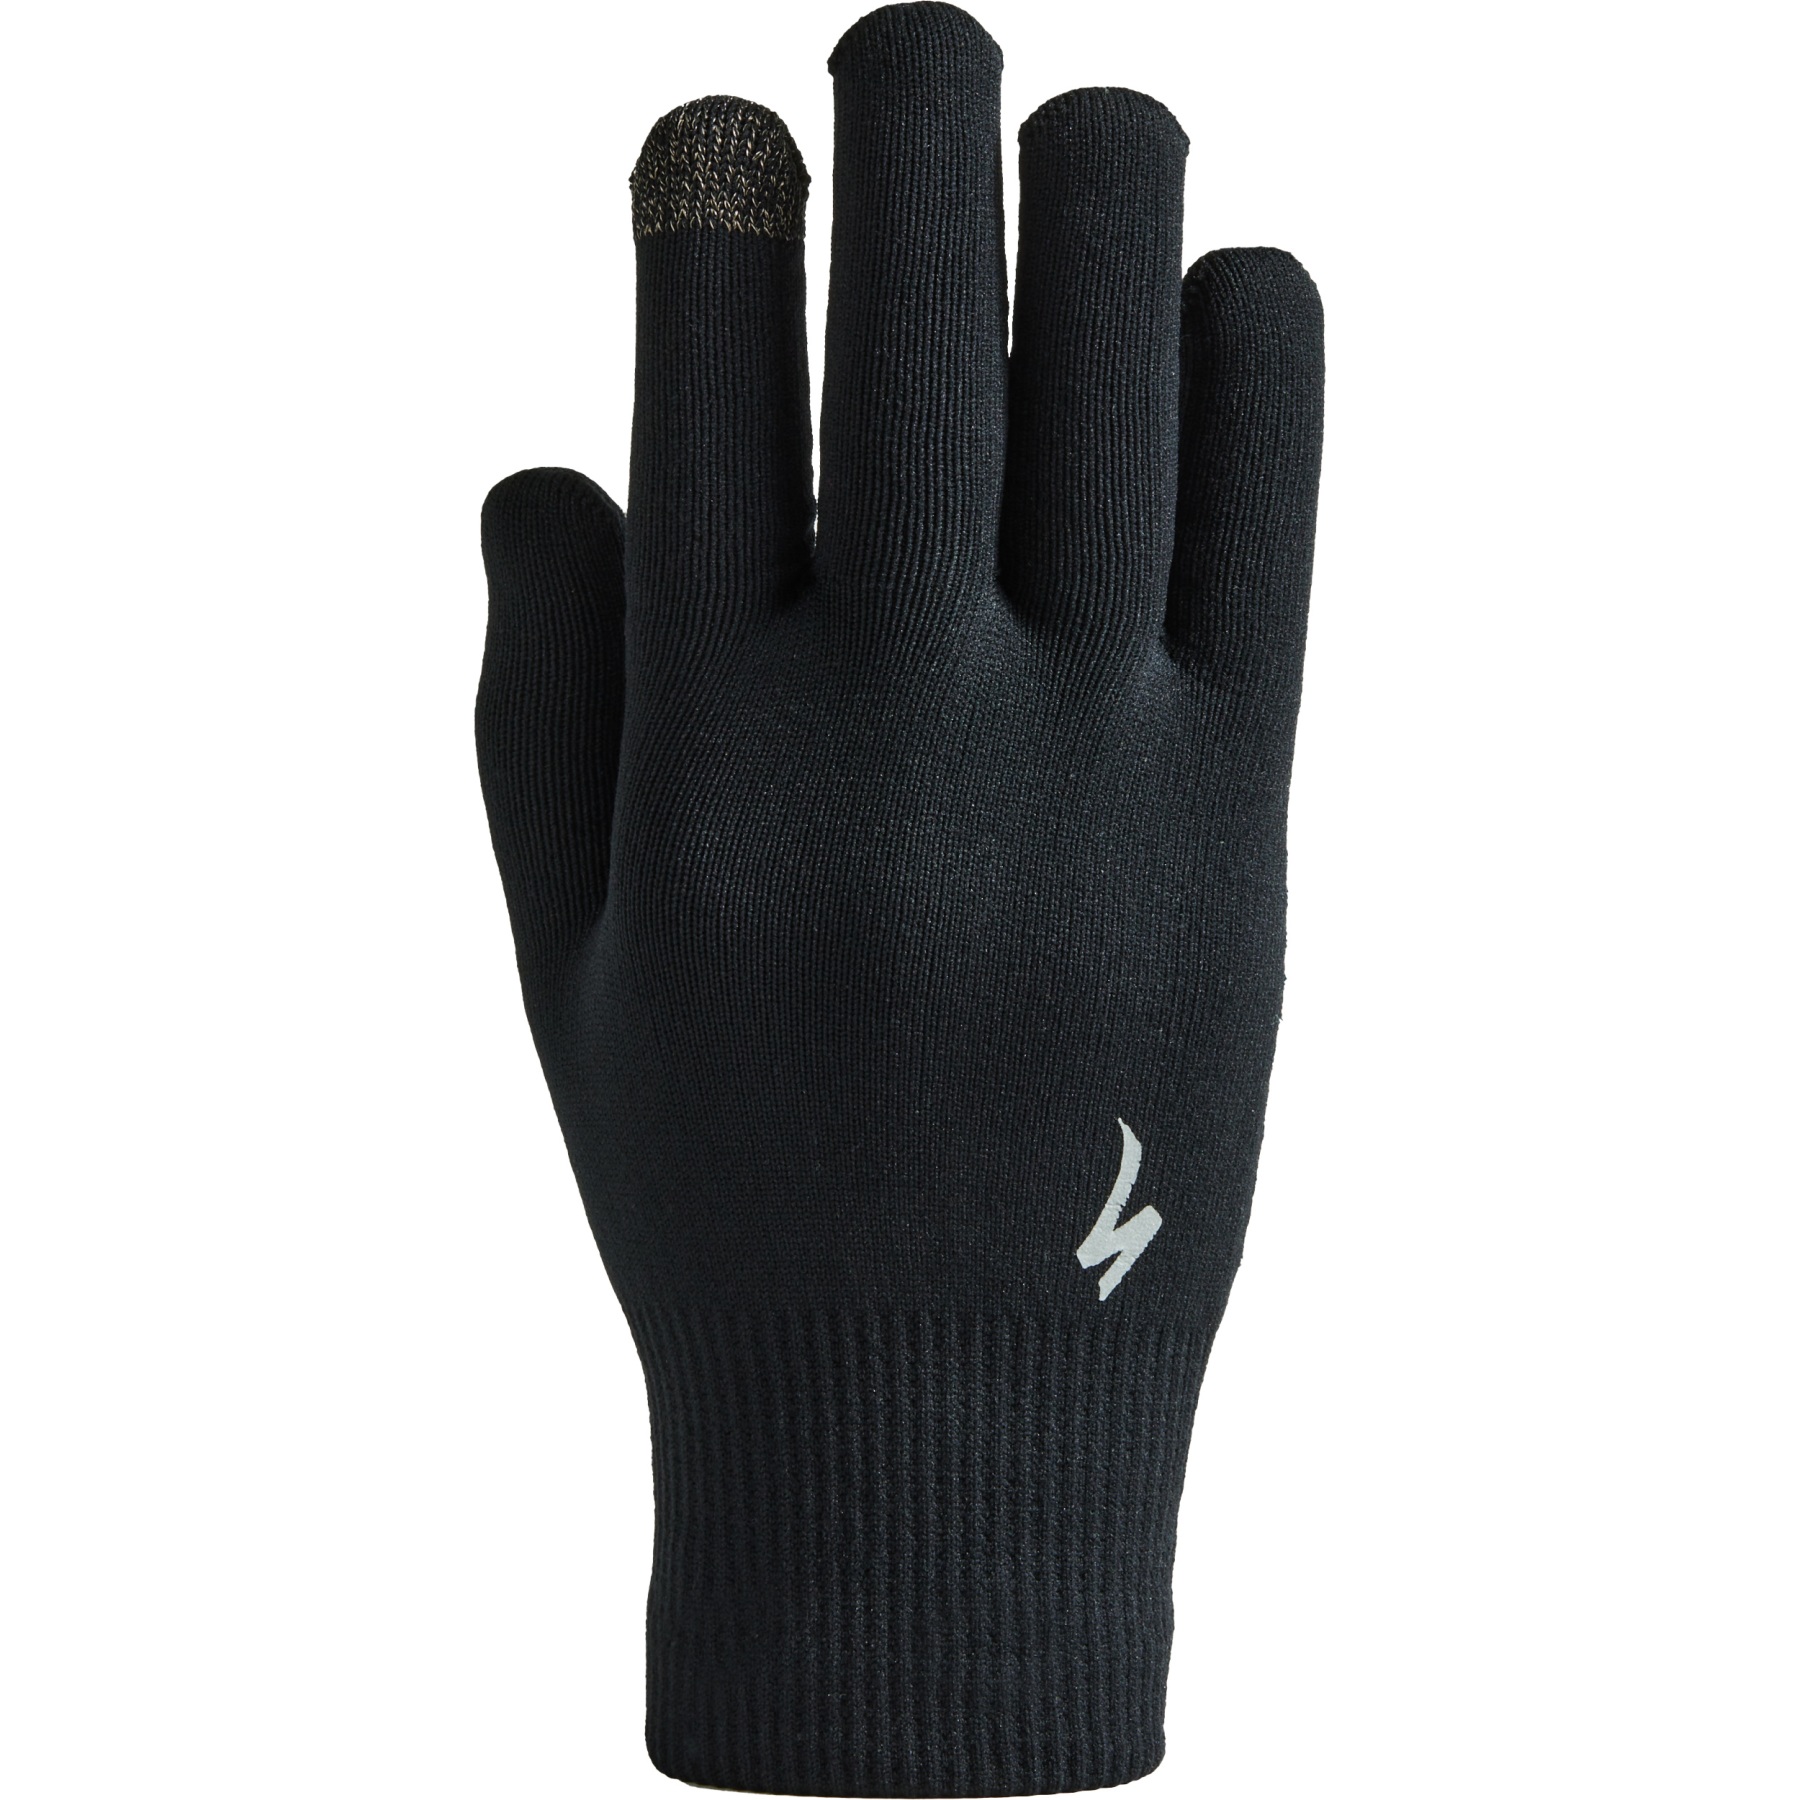 Produktbild von Specialized Thermal Knit Handschuhe - schwarz